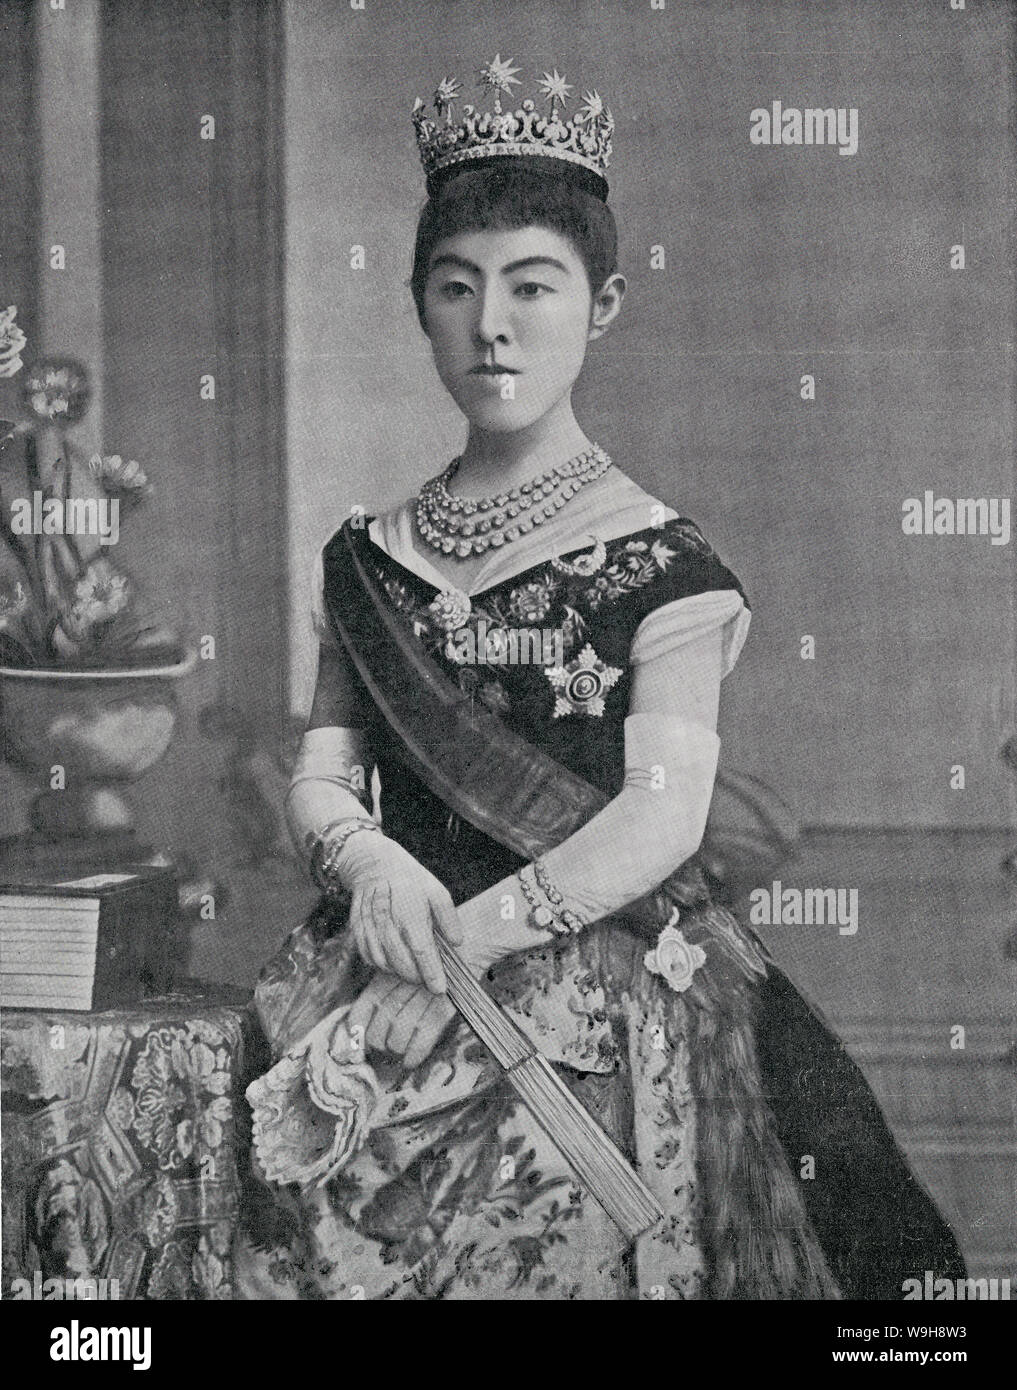 [ 1900 Giappone - Imperatrice Shoken ] - Ritratto di imperatrice Shoken (昭憲皇后, Shoken Kogo, 1849-1914), consorte dell'Imperatore Meiji. Nato come Masako Ichijo (一条勝子), ha adottato il nome dato Haruko (美子) quando ella divenne impegnato per l'Imperatore Meiji il 2 settembre 1867 (Keio 2). Il suo nome postumo è stato cambiato per l'Imperatrice Shoken. Pubblicato in settimanale inglese illustrato ufficiale del re e della sua flotta ed esercito il 13 febbraio 1904. Xix secolo quotidiano vintage illustrazione. Foto Stock